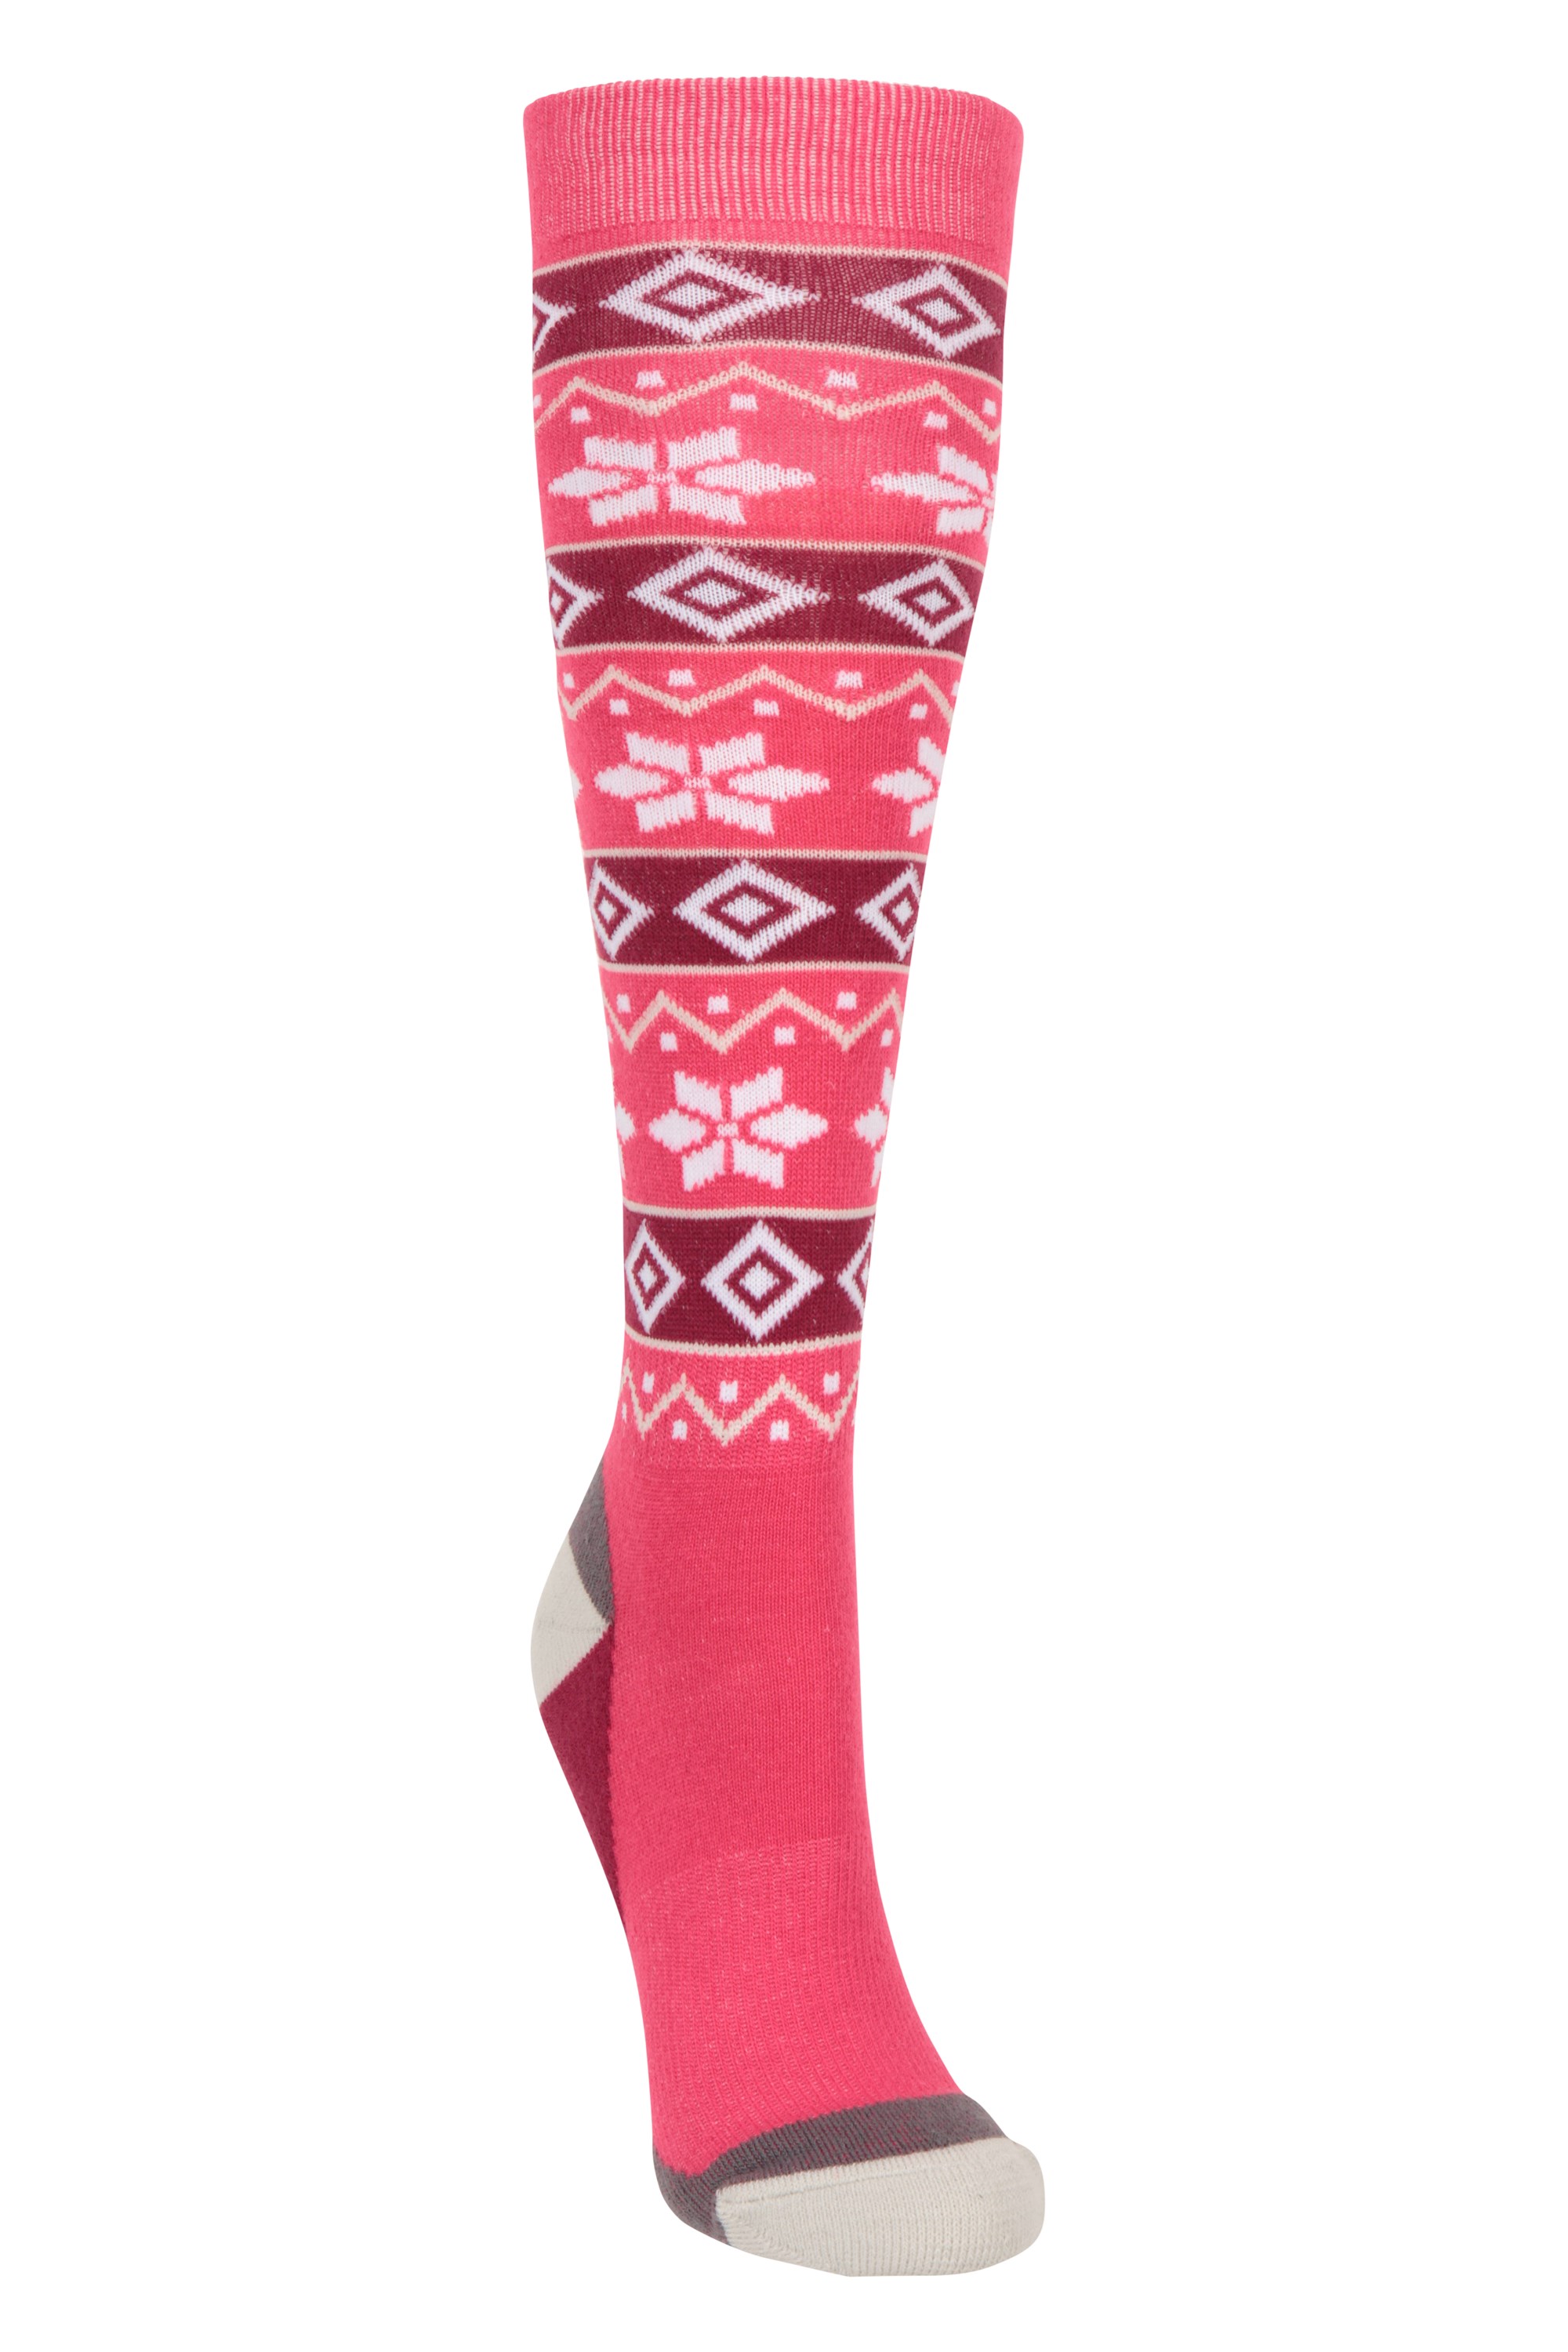 Isocool Womens Patterned Knee Length Ski Socks